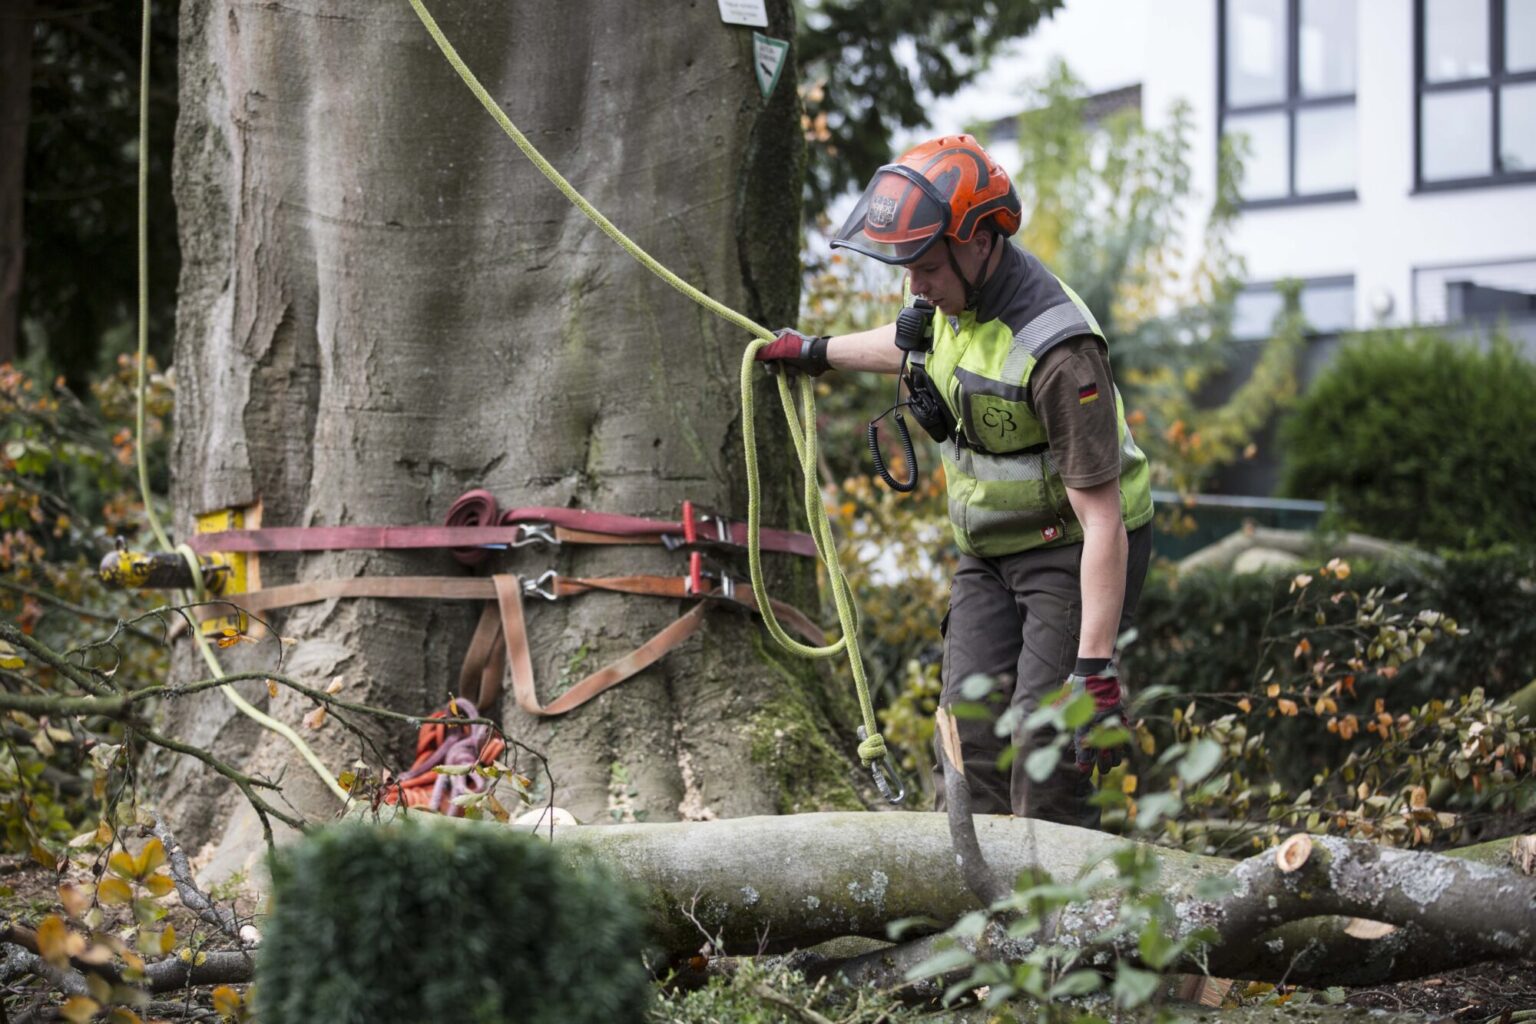 Baumfaellung Baumsanierung Sicherheit Baumpflege Bach